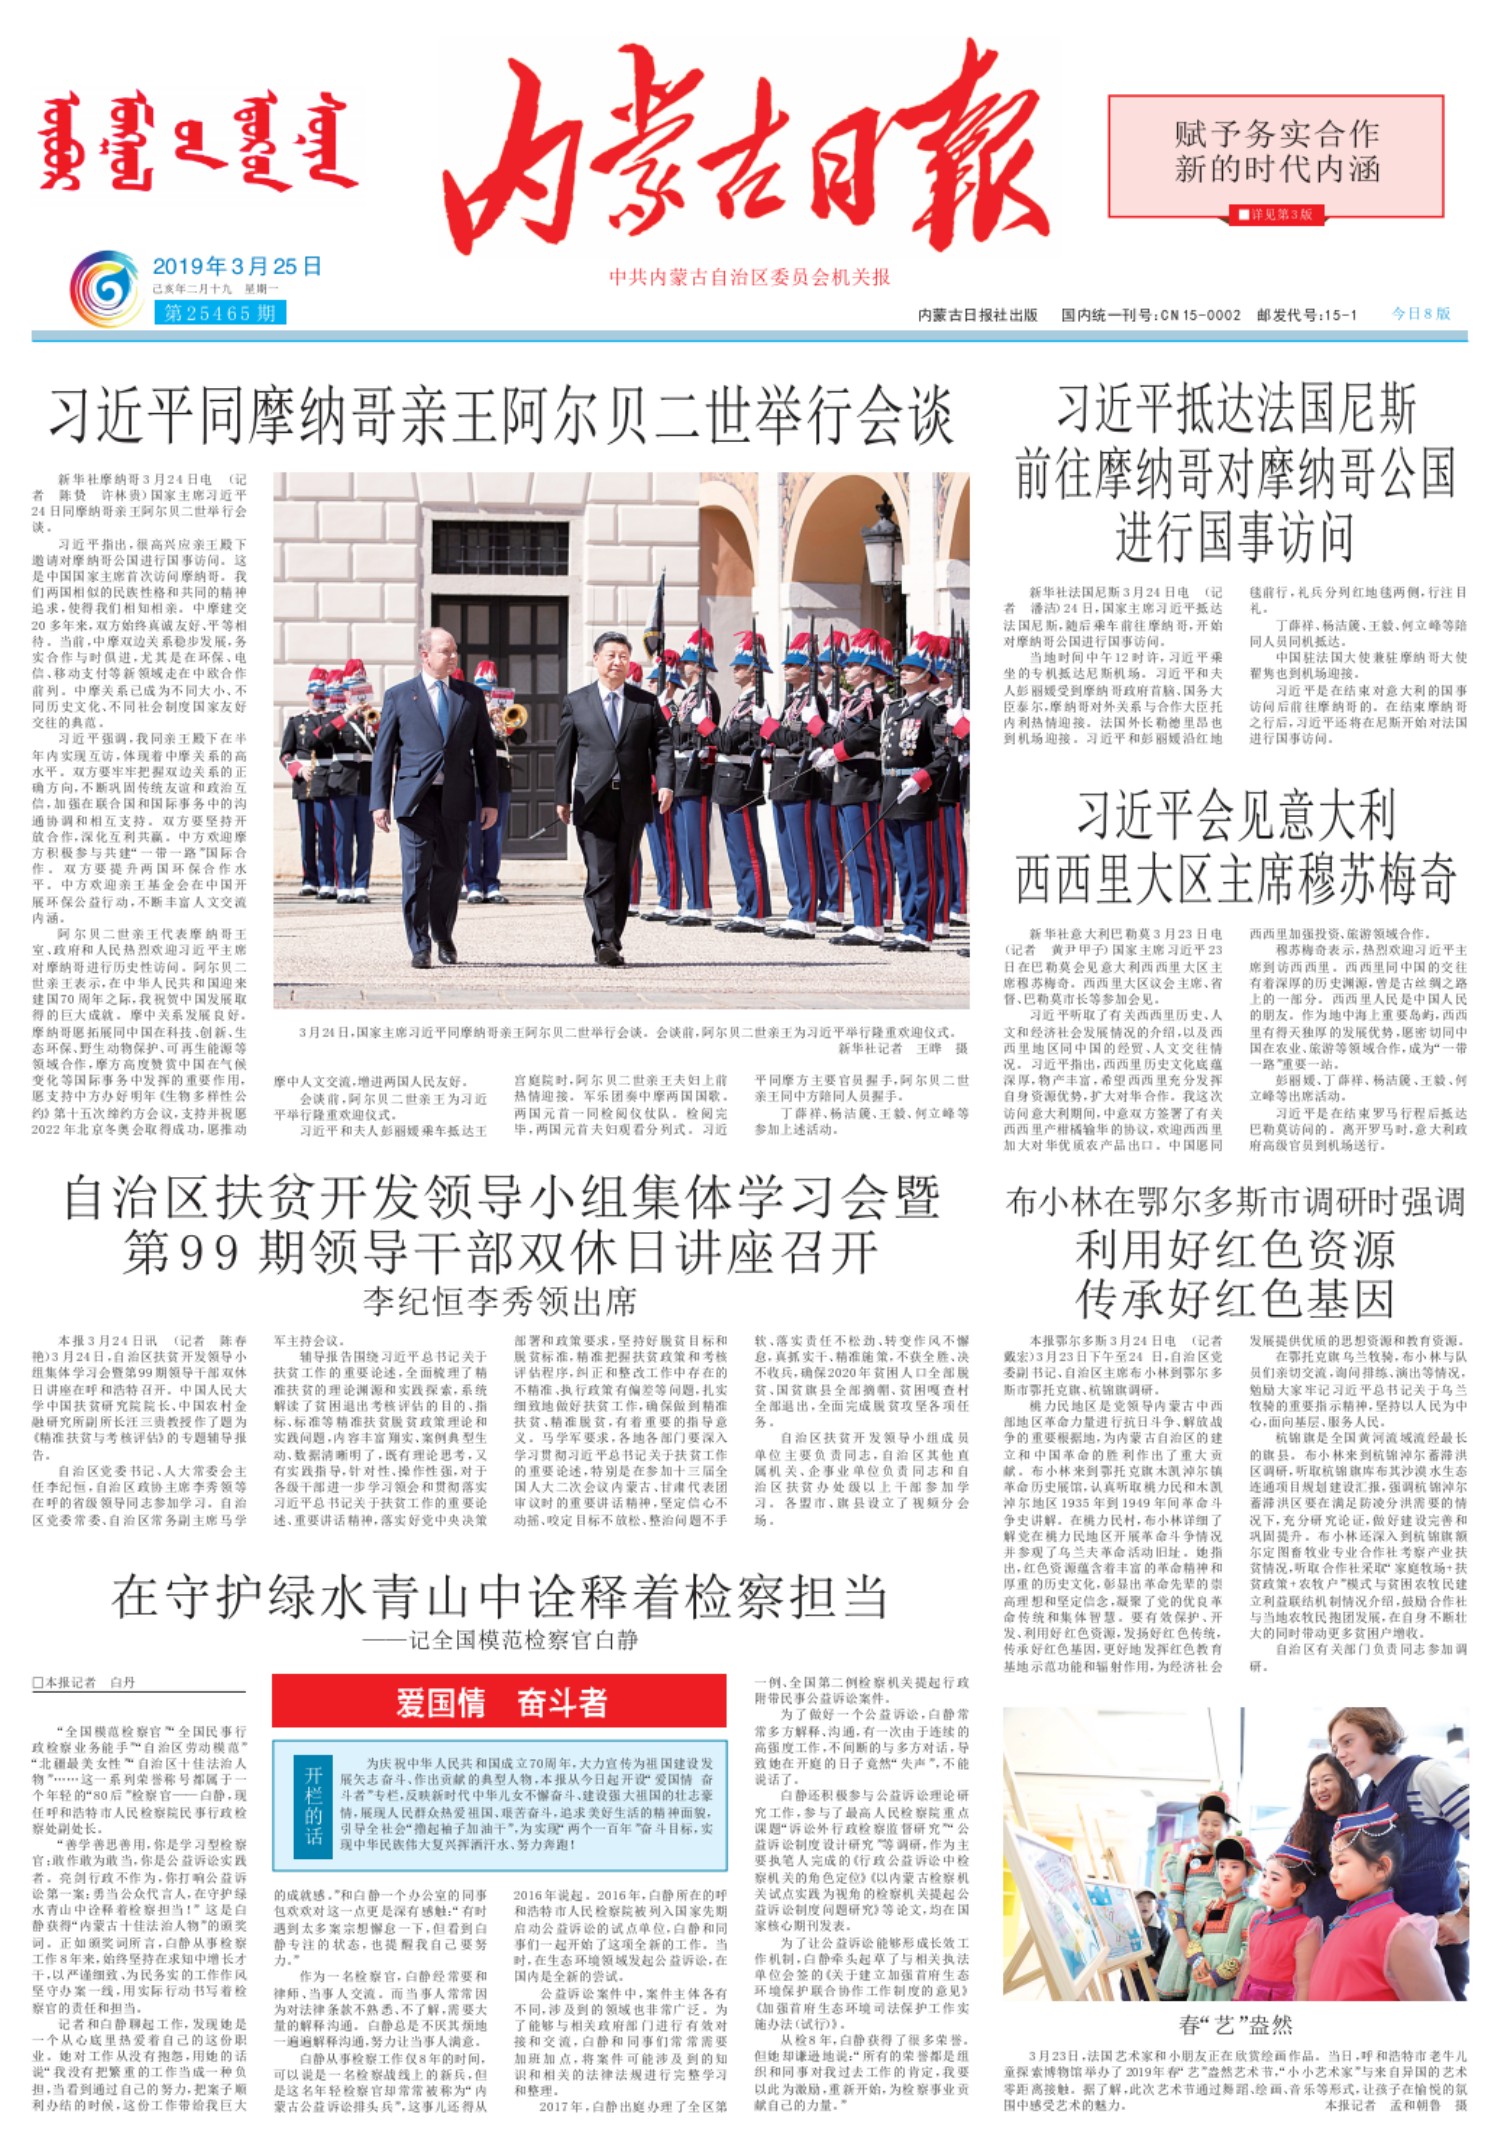 内蒙古日报-2019年03月25日